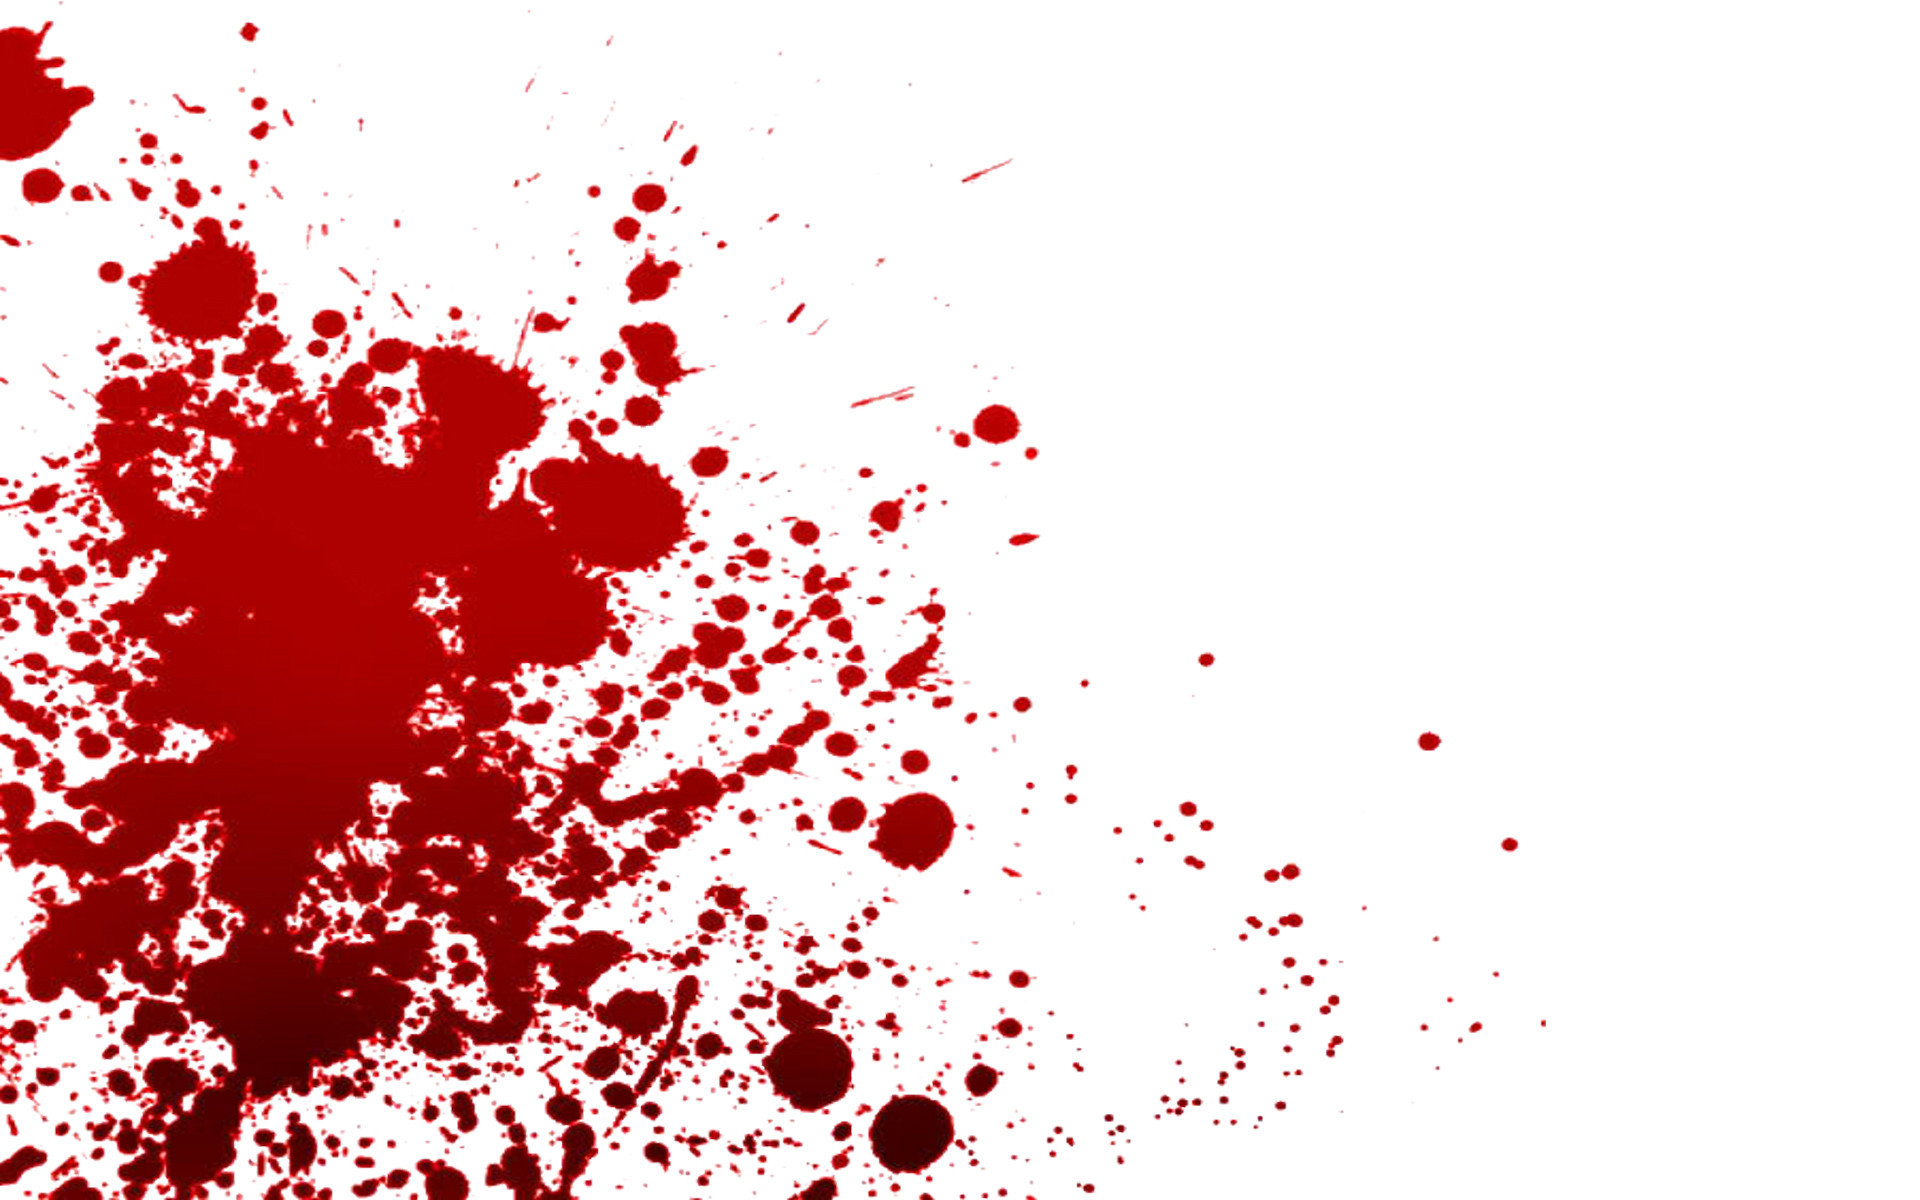 Blood Splatter Drawing Image